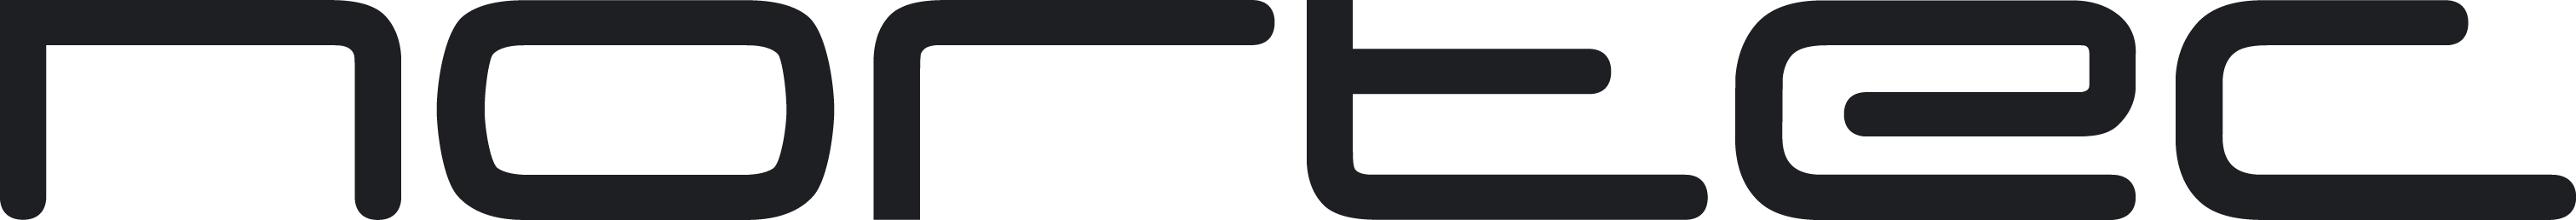 full-logo